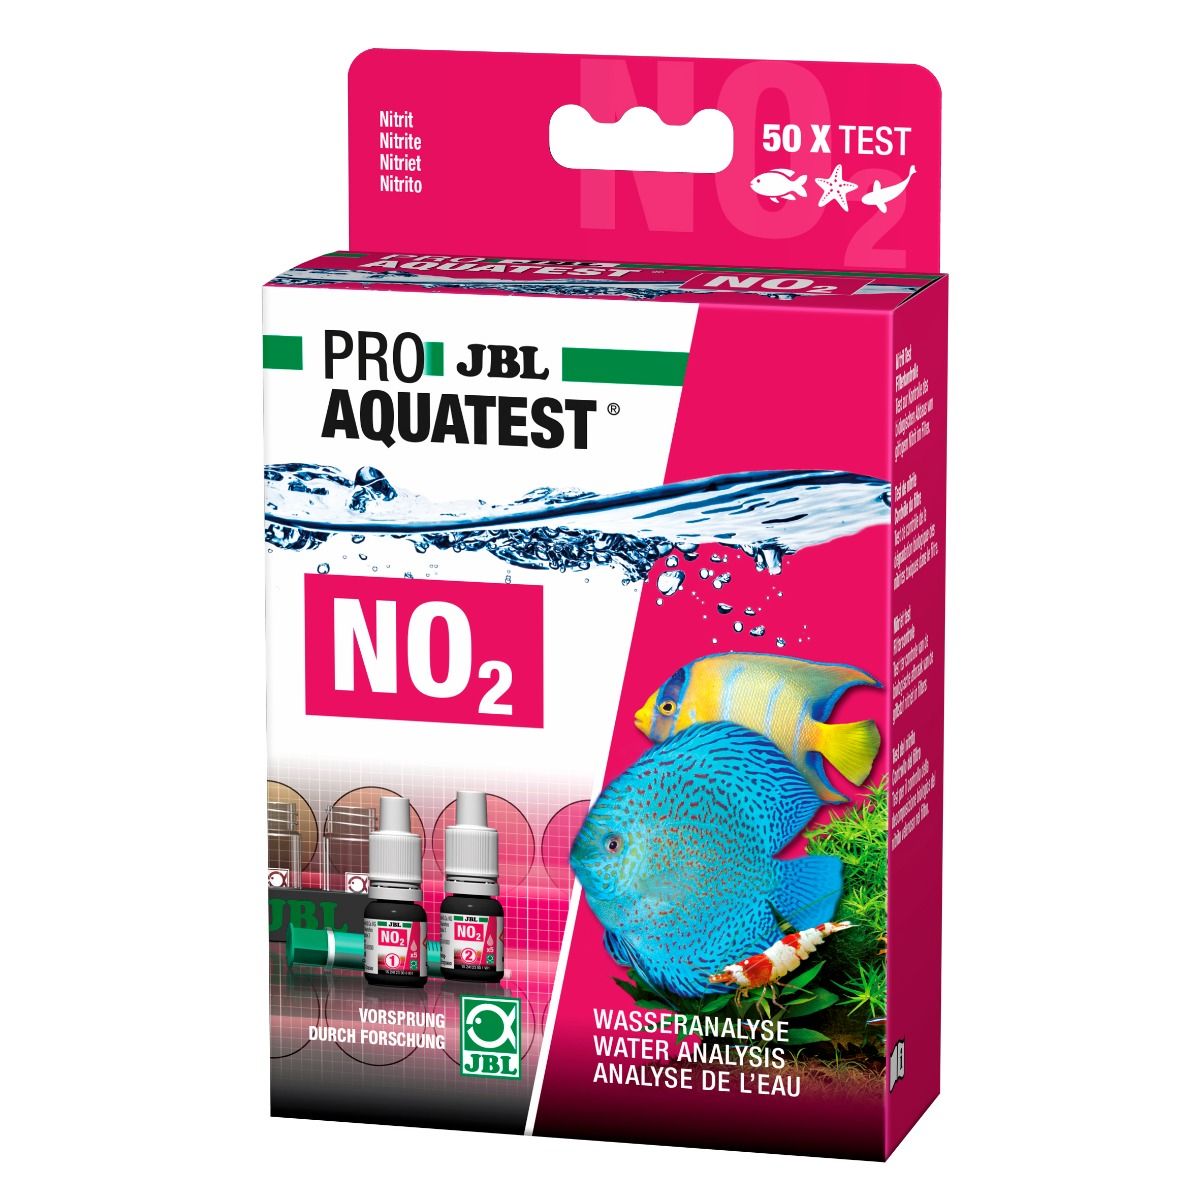 JBL AquaEx Set 45-70 Aquarium Siphon - Nuterro Aquatics